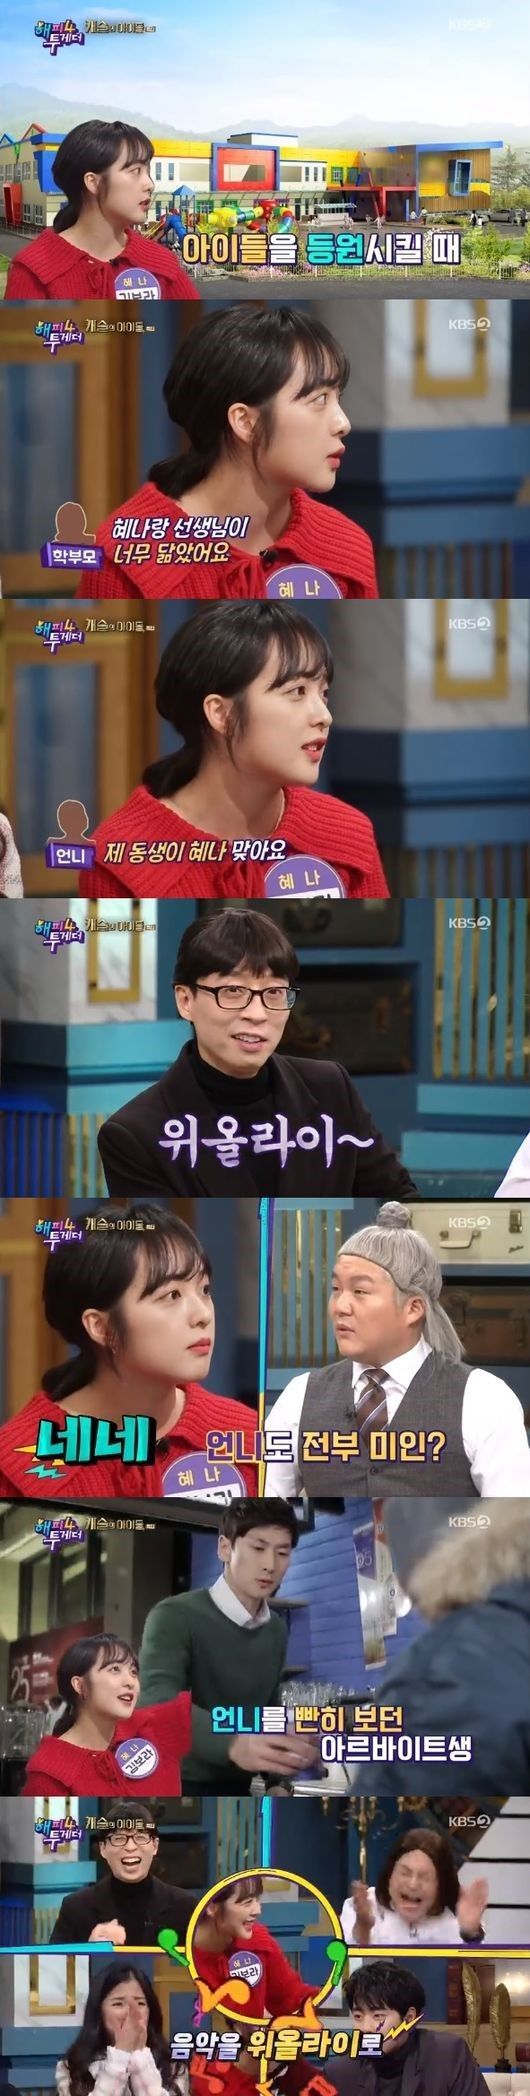 31일 KBS 2TV '해투4'에서 김보라가 자신과 닮은 둘째 언니의 일화를 이야기하고 있다/사진=KBS 2TV '해피투게더4' 화면 캡처